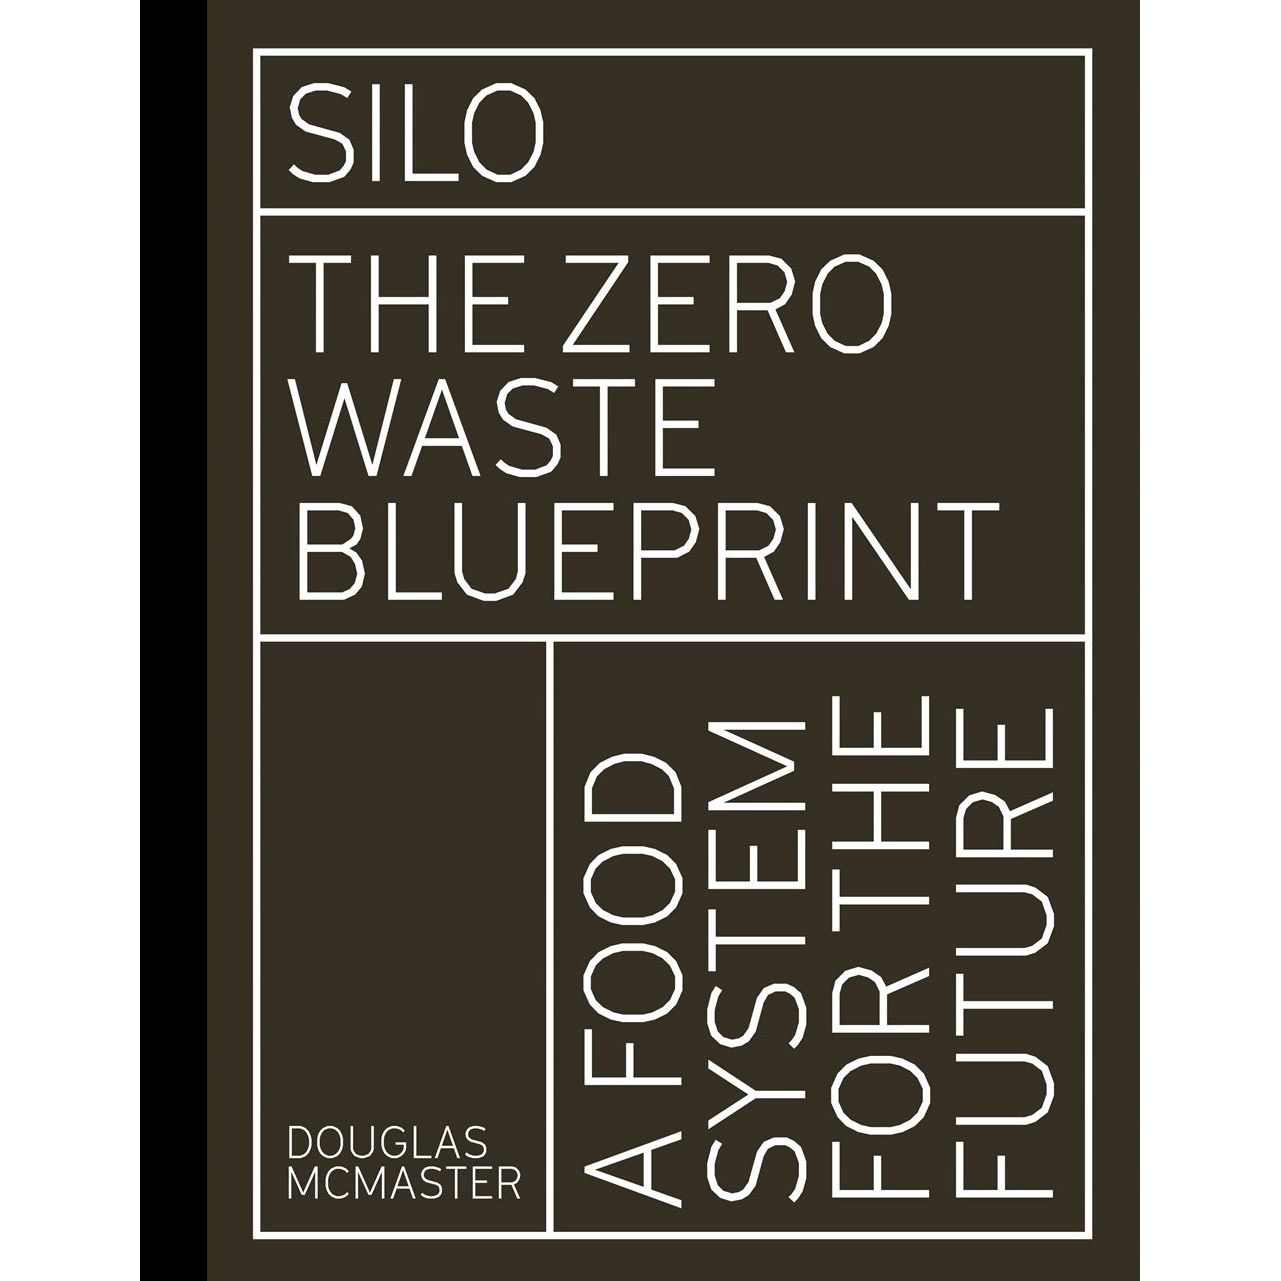 Silo: The Zero Waste Blueprint (Douglas McMaster)